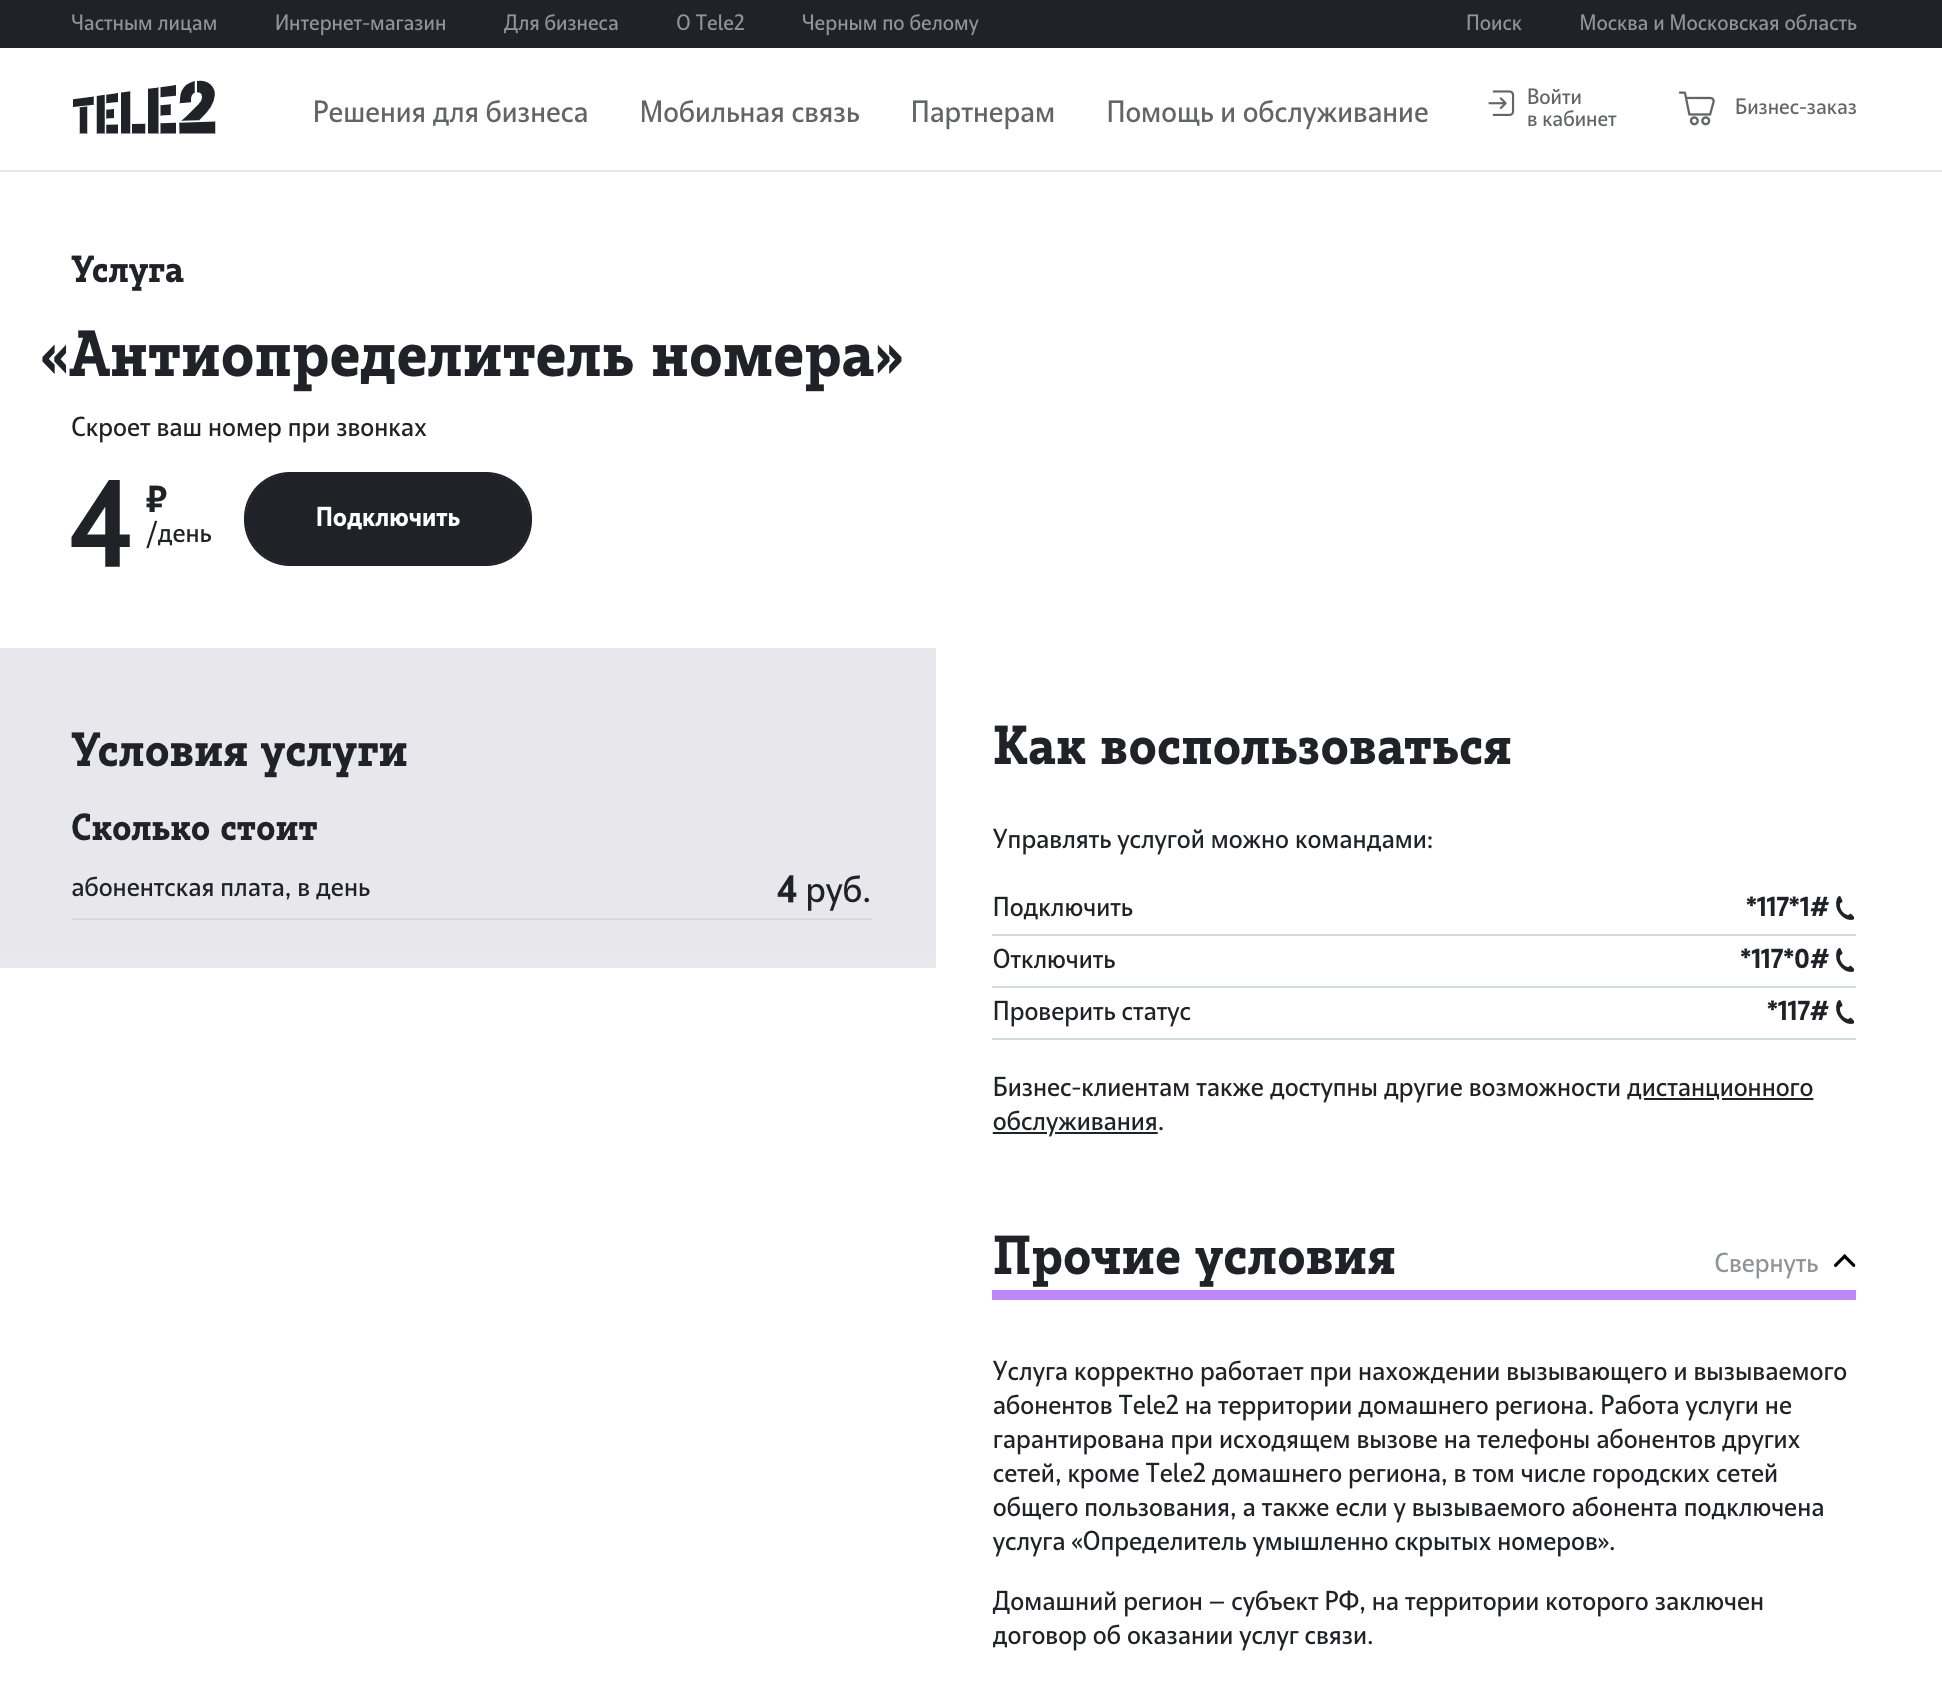 Как скрыть свой номер телефона на теле2 бесплатно тарифкин.ру
как скрыть свой номер телефона на теле2 бесплатно